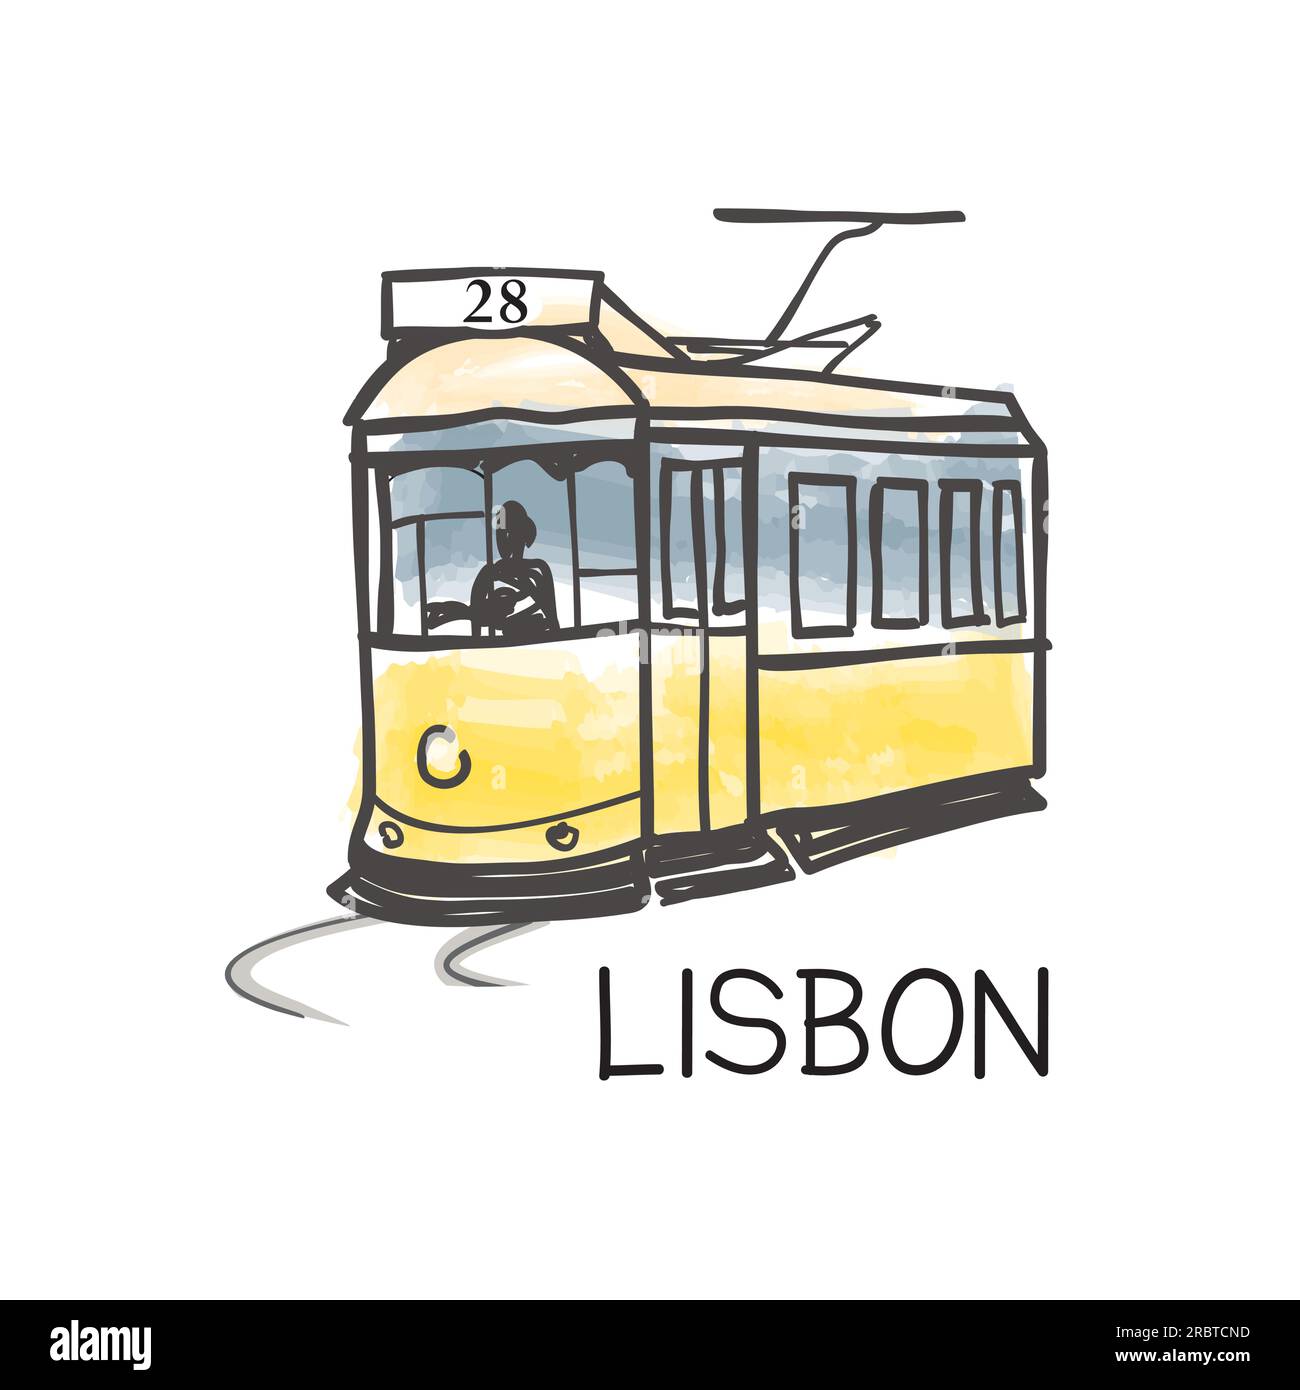 Simbolo della città di Lisbona, famoso tram giallo d'epoca n. 28, il più antico trasporto pubblico europeo della città vecchia, Lisbona, Portogallo. Attr. Turistico poster retrò Illustrazione Vettoriale